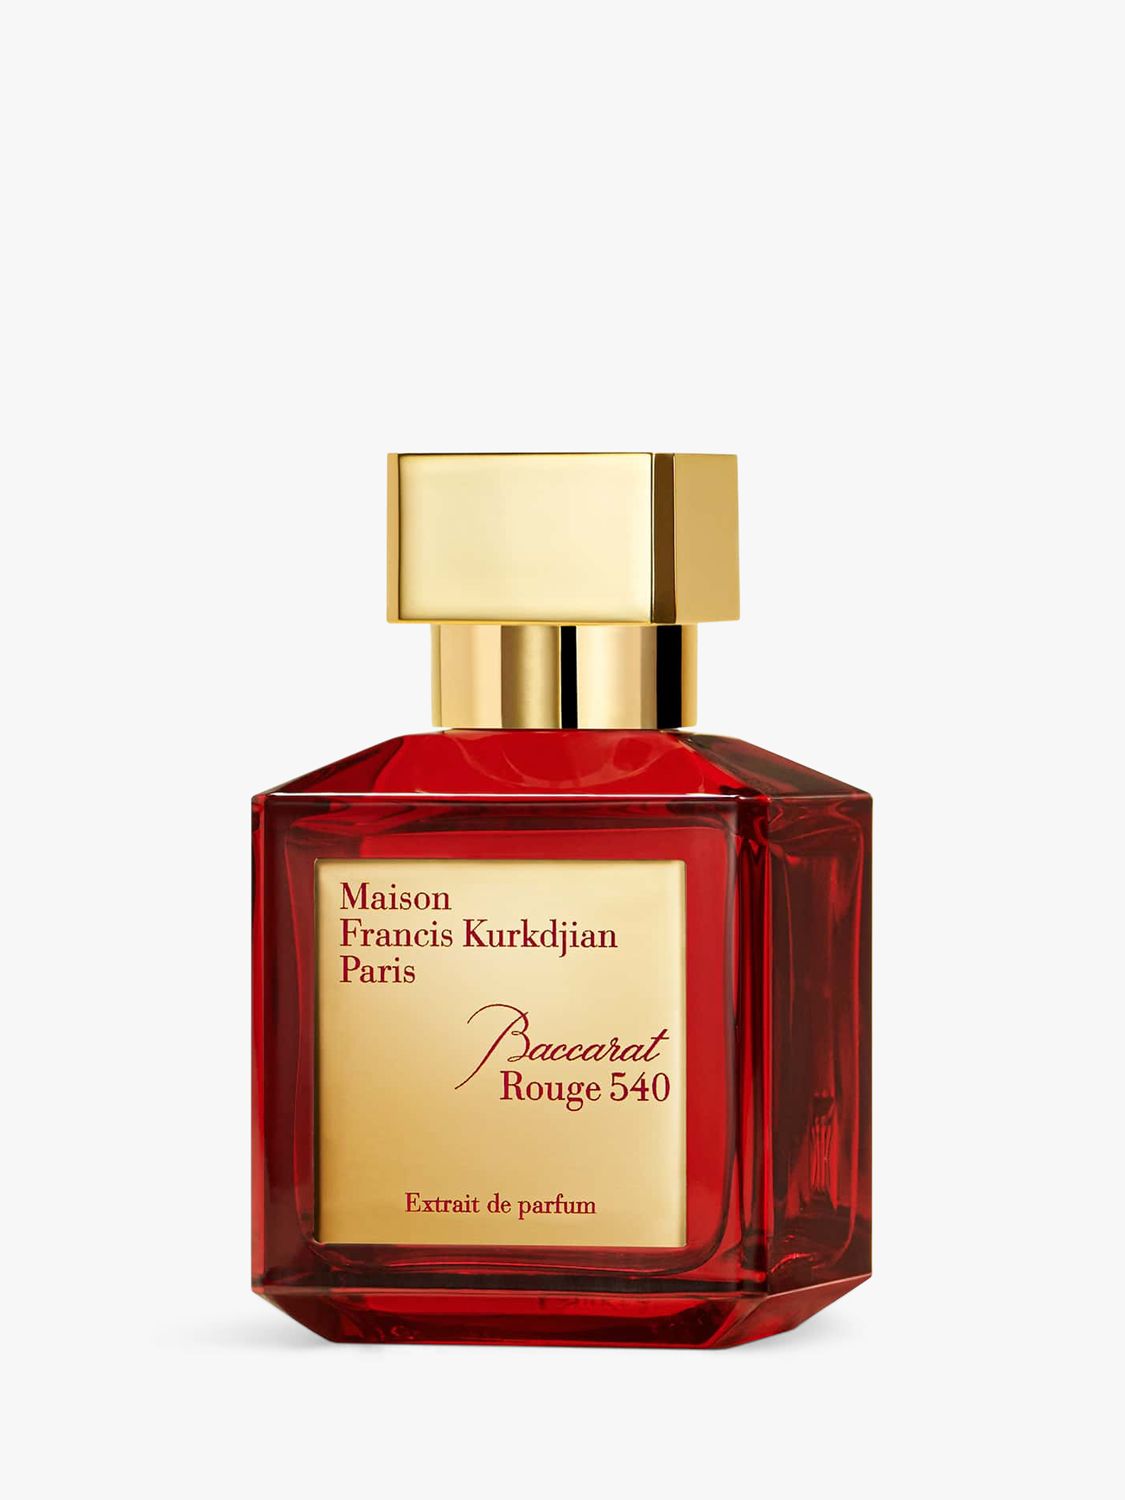 Maison Francis Kurkdjian Baccarat Rouge 540 Extrait de Parfum, 70ml at John  Lewis & Partners